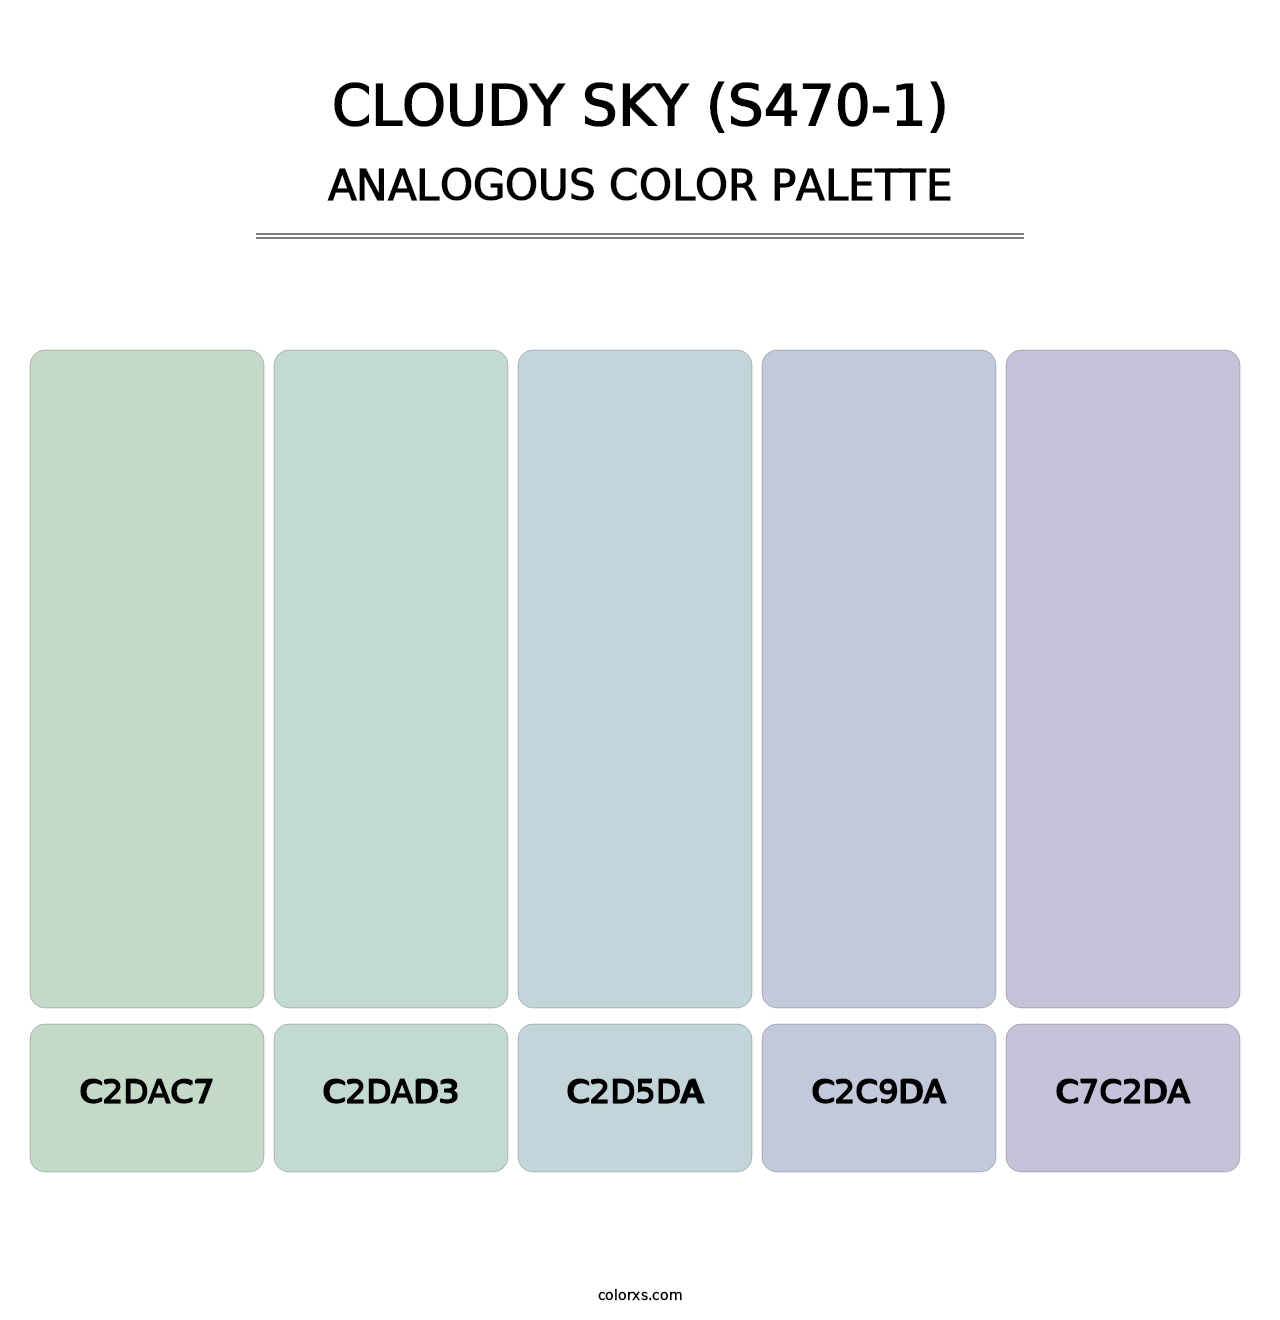 Cloudy Sky (S470-1) - Analogous Color Palette